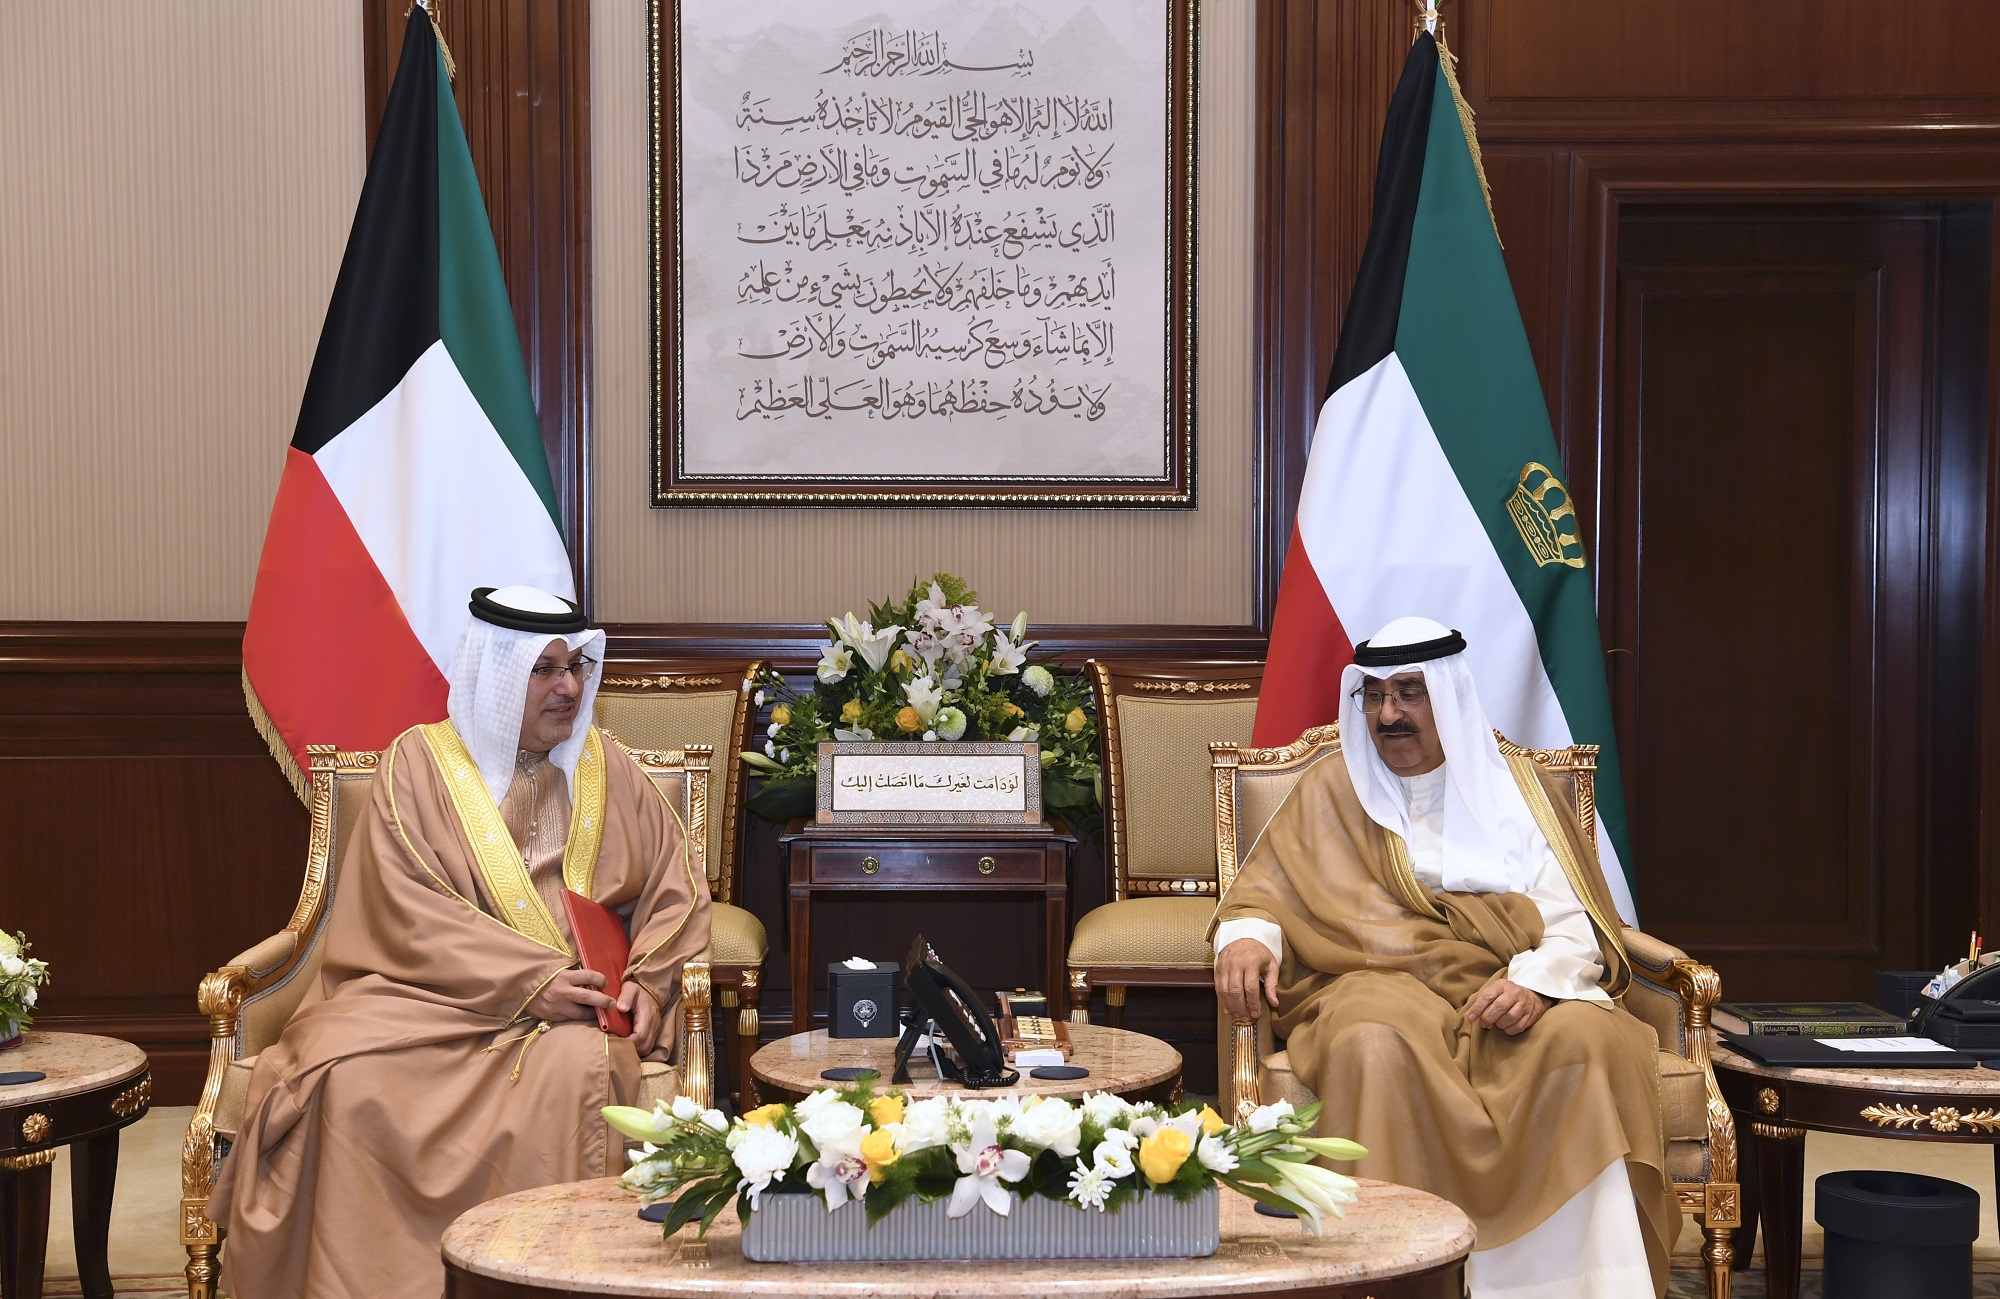 His Highness the Amir Sheikh Mishal Al-Ahmad Al-Jaber Al-Sabah receives Bahraini Ambassador to Kuwait Salah Al-Malki